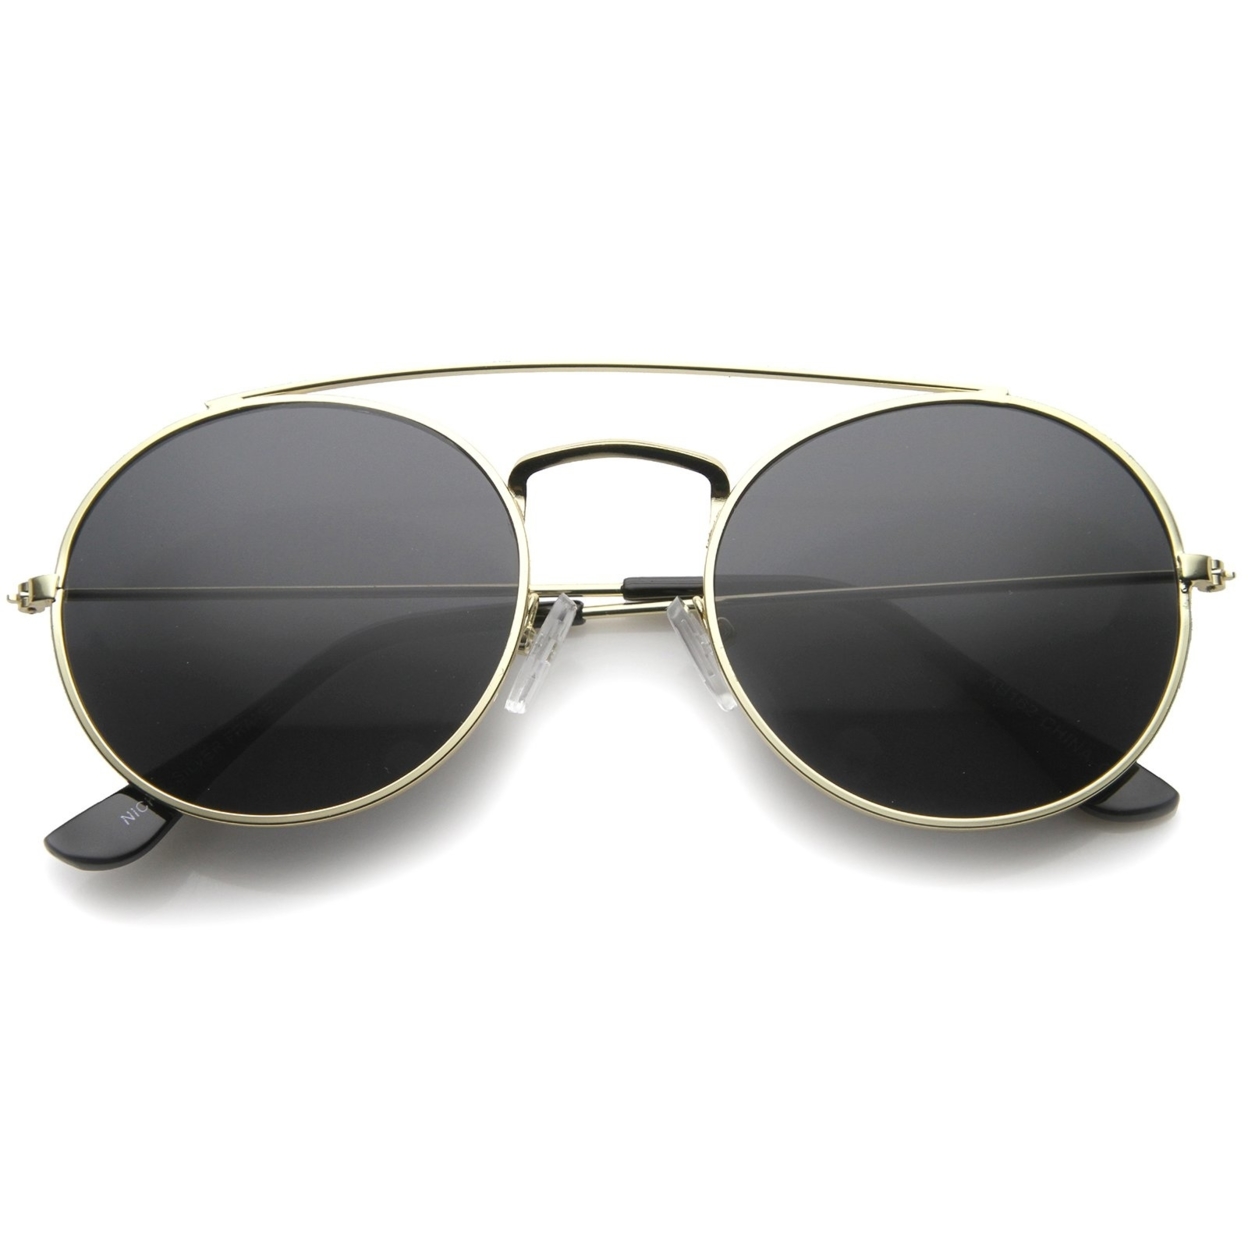 Retro Fashion Minimal Thin Metal Brow Bar Round Sunglasses 52mm - Black / Smoke